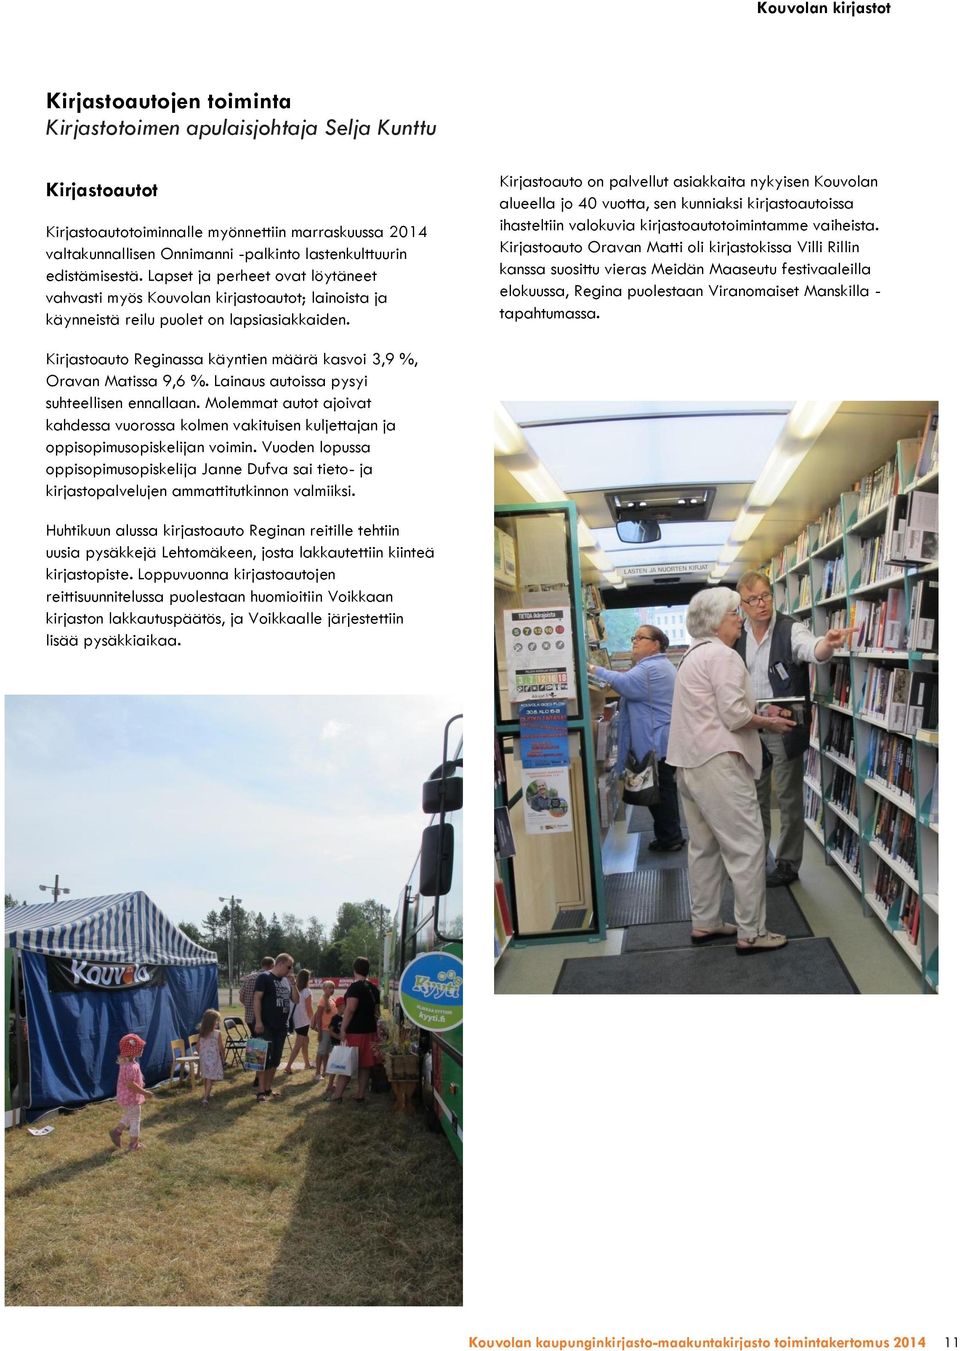 Kirjastoauto on palvellut asiakkaita nykyisen Kouvolan alueella jo 40 vuotta, sen kunniaksi kirjastoautoissa ihasteltiin valokuvia kirjastoautotoimintamme vaiheista.